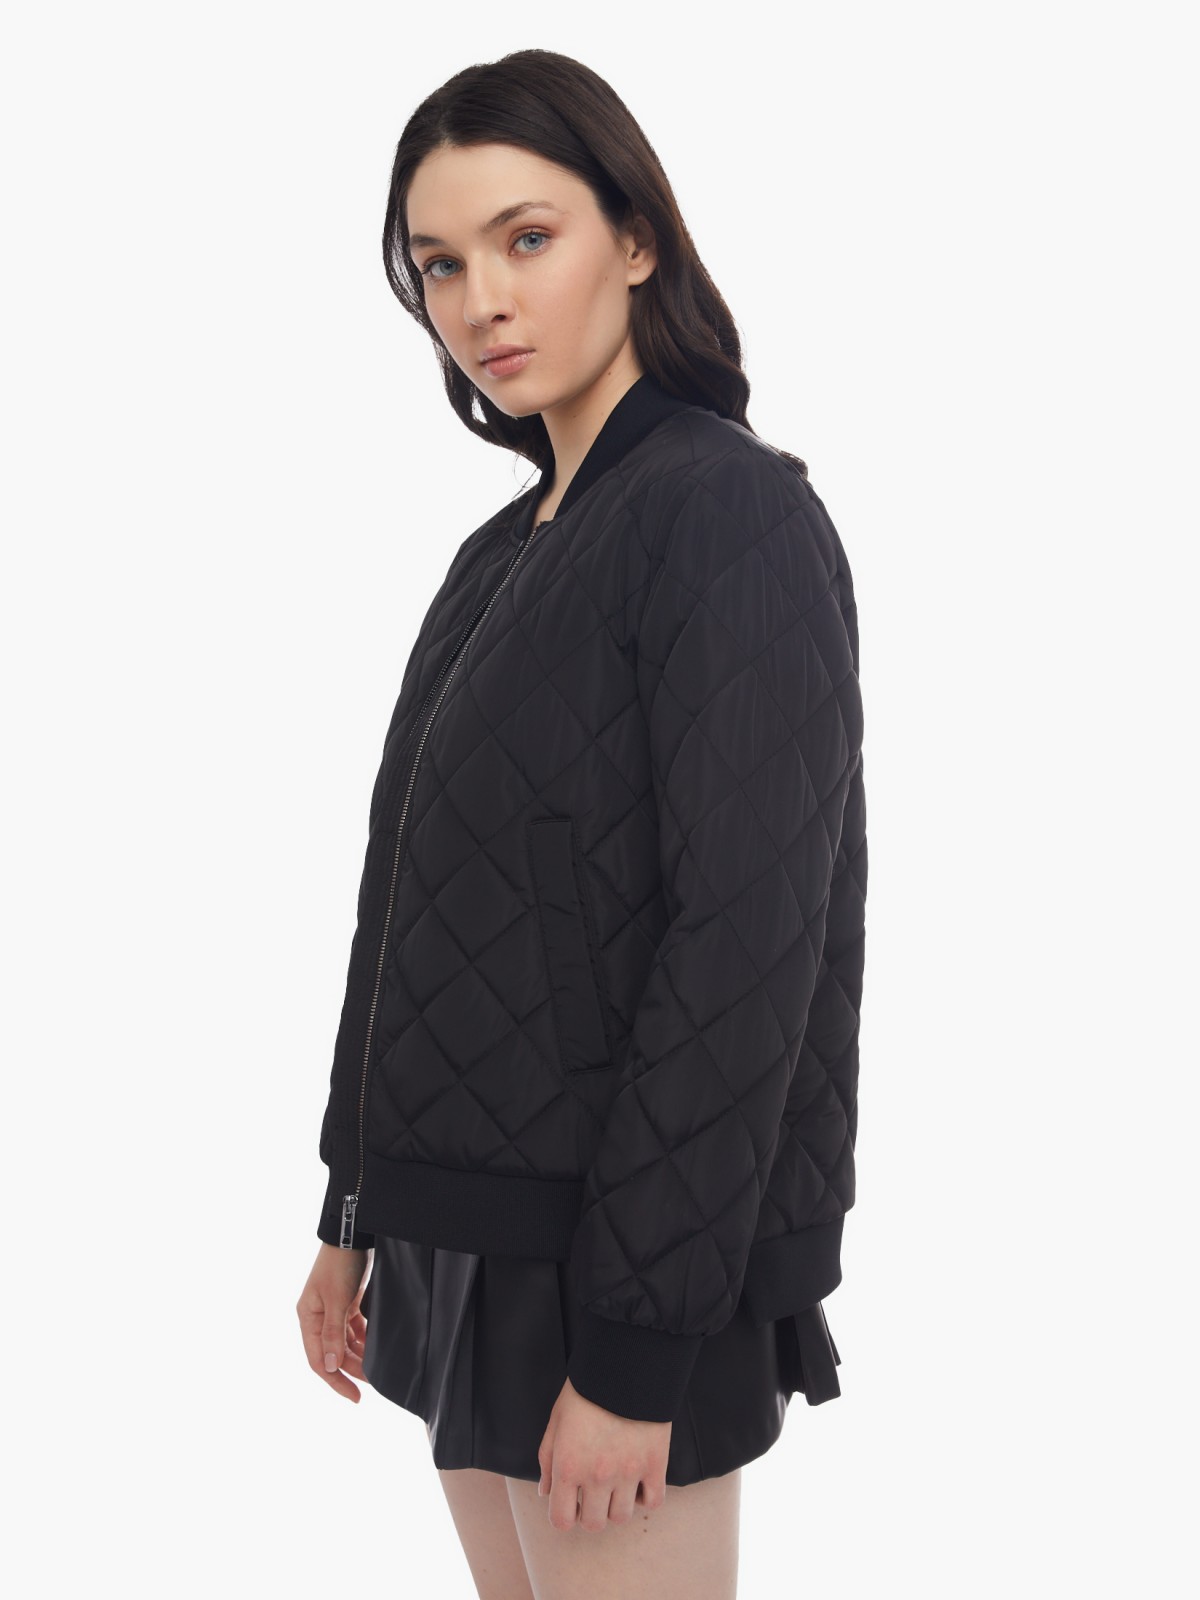 Тёплая куртка-бомбер на синтепоне со стёжкой zolla 024125102224, цвет черный, размер XS - фото 3